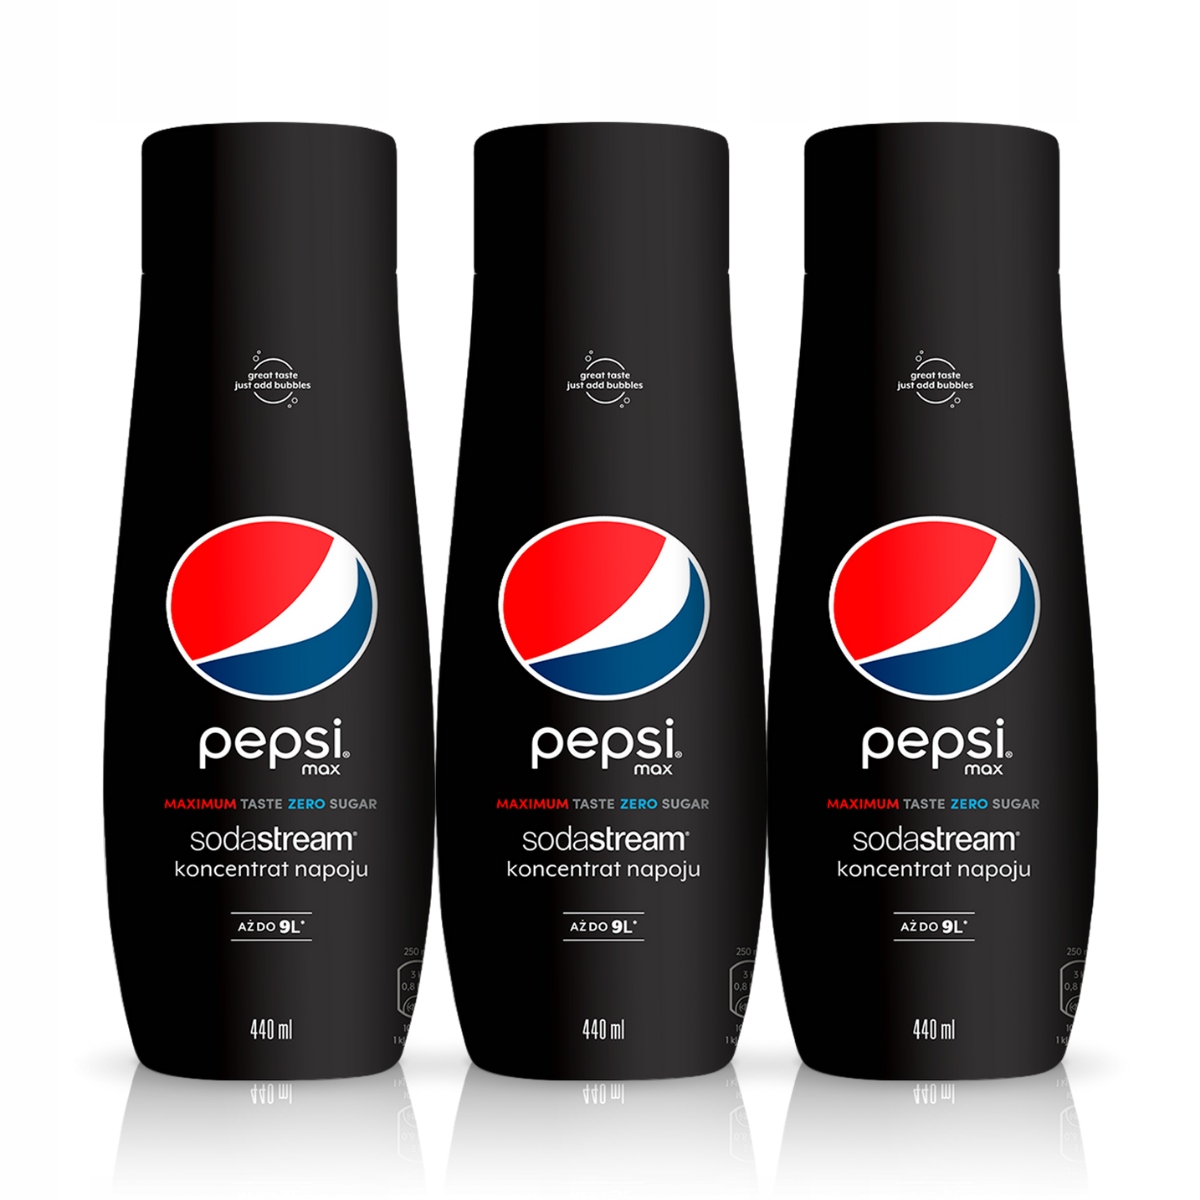 SodaStream Pepsi Max 3 sztuki zestaw